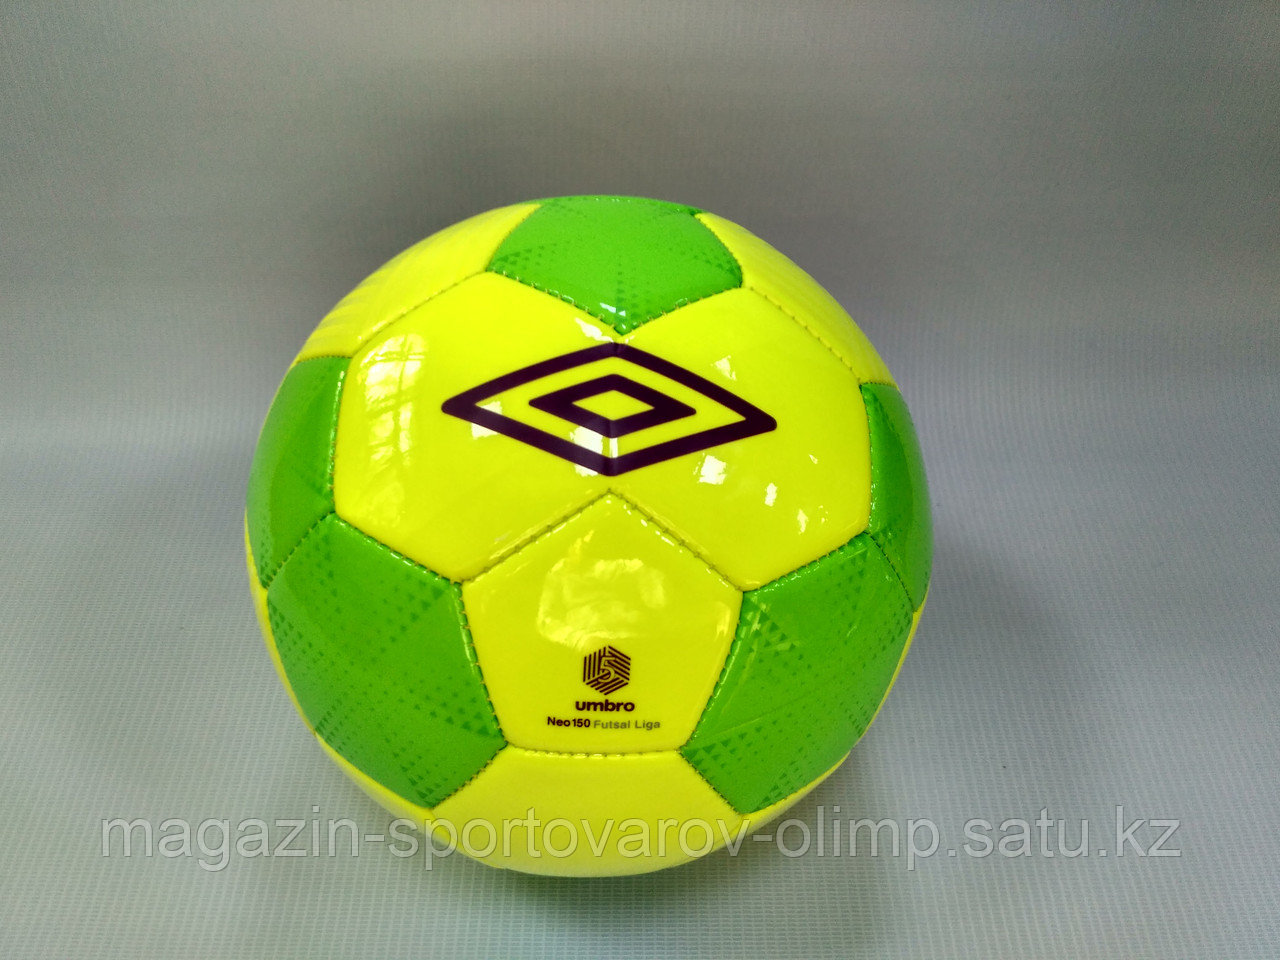 Мяч футзальный (мини футбол) Umbro Neo 150